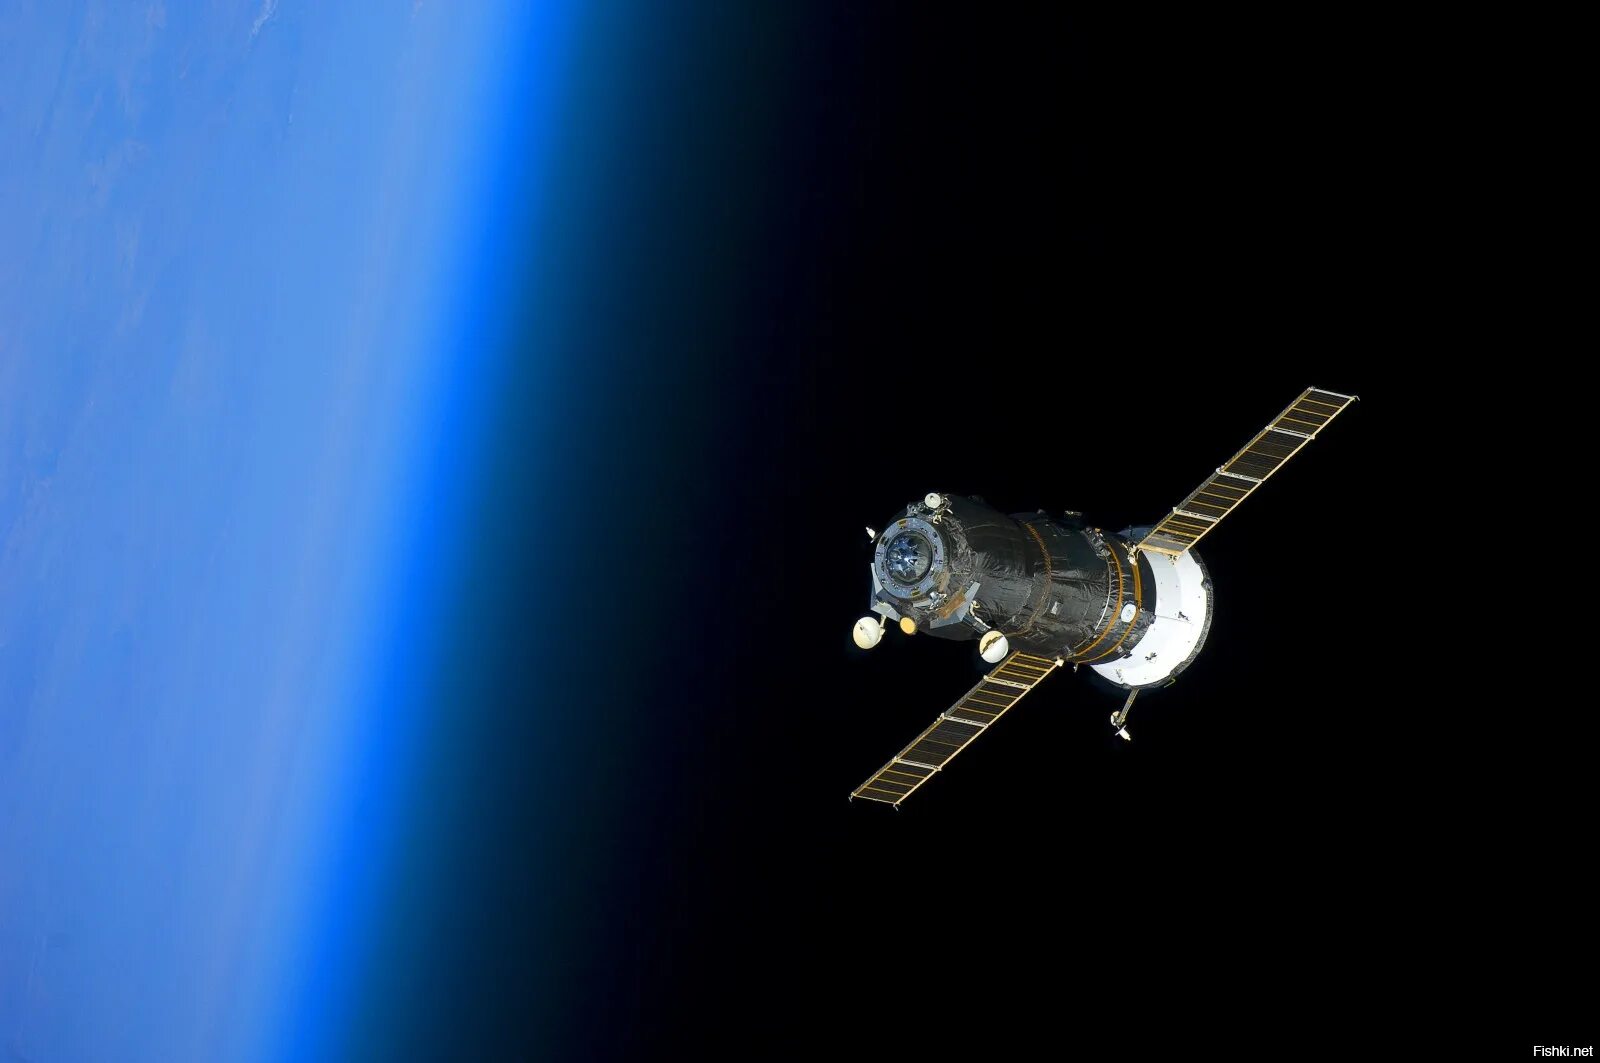 Искусственный спутник земли на небе. Орбитальная станция Вояджер. Космические аппараты. Спутник в космосе. Спутник космический аппарат.